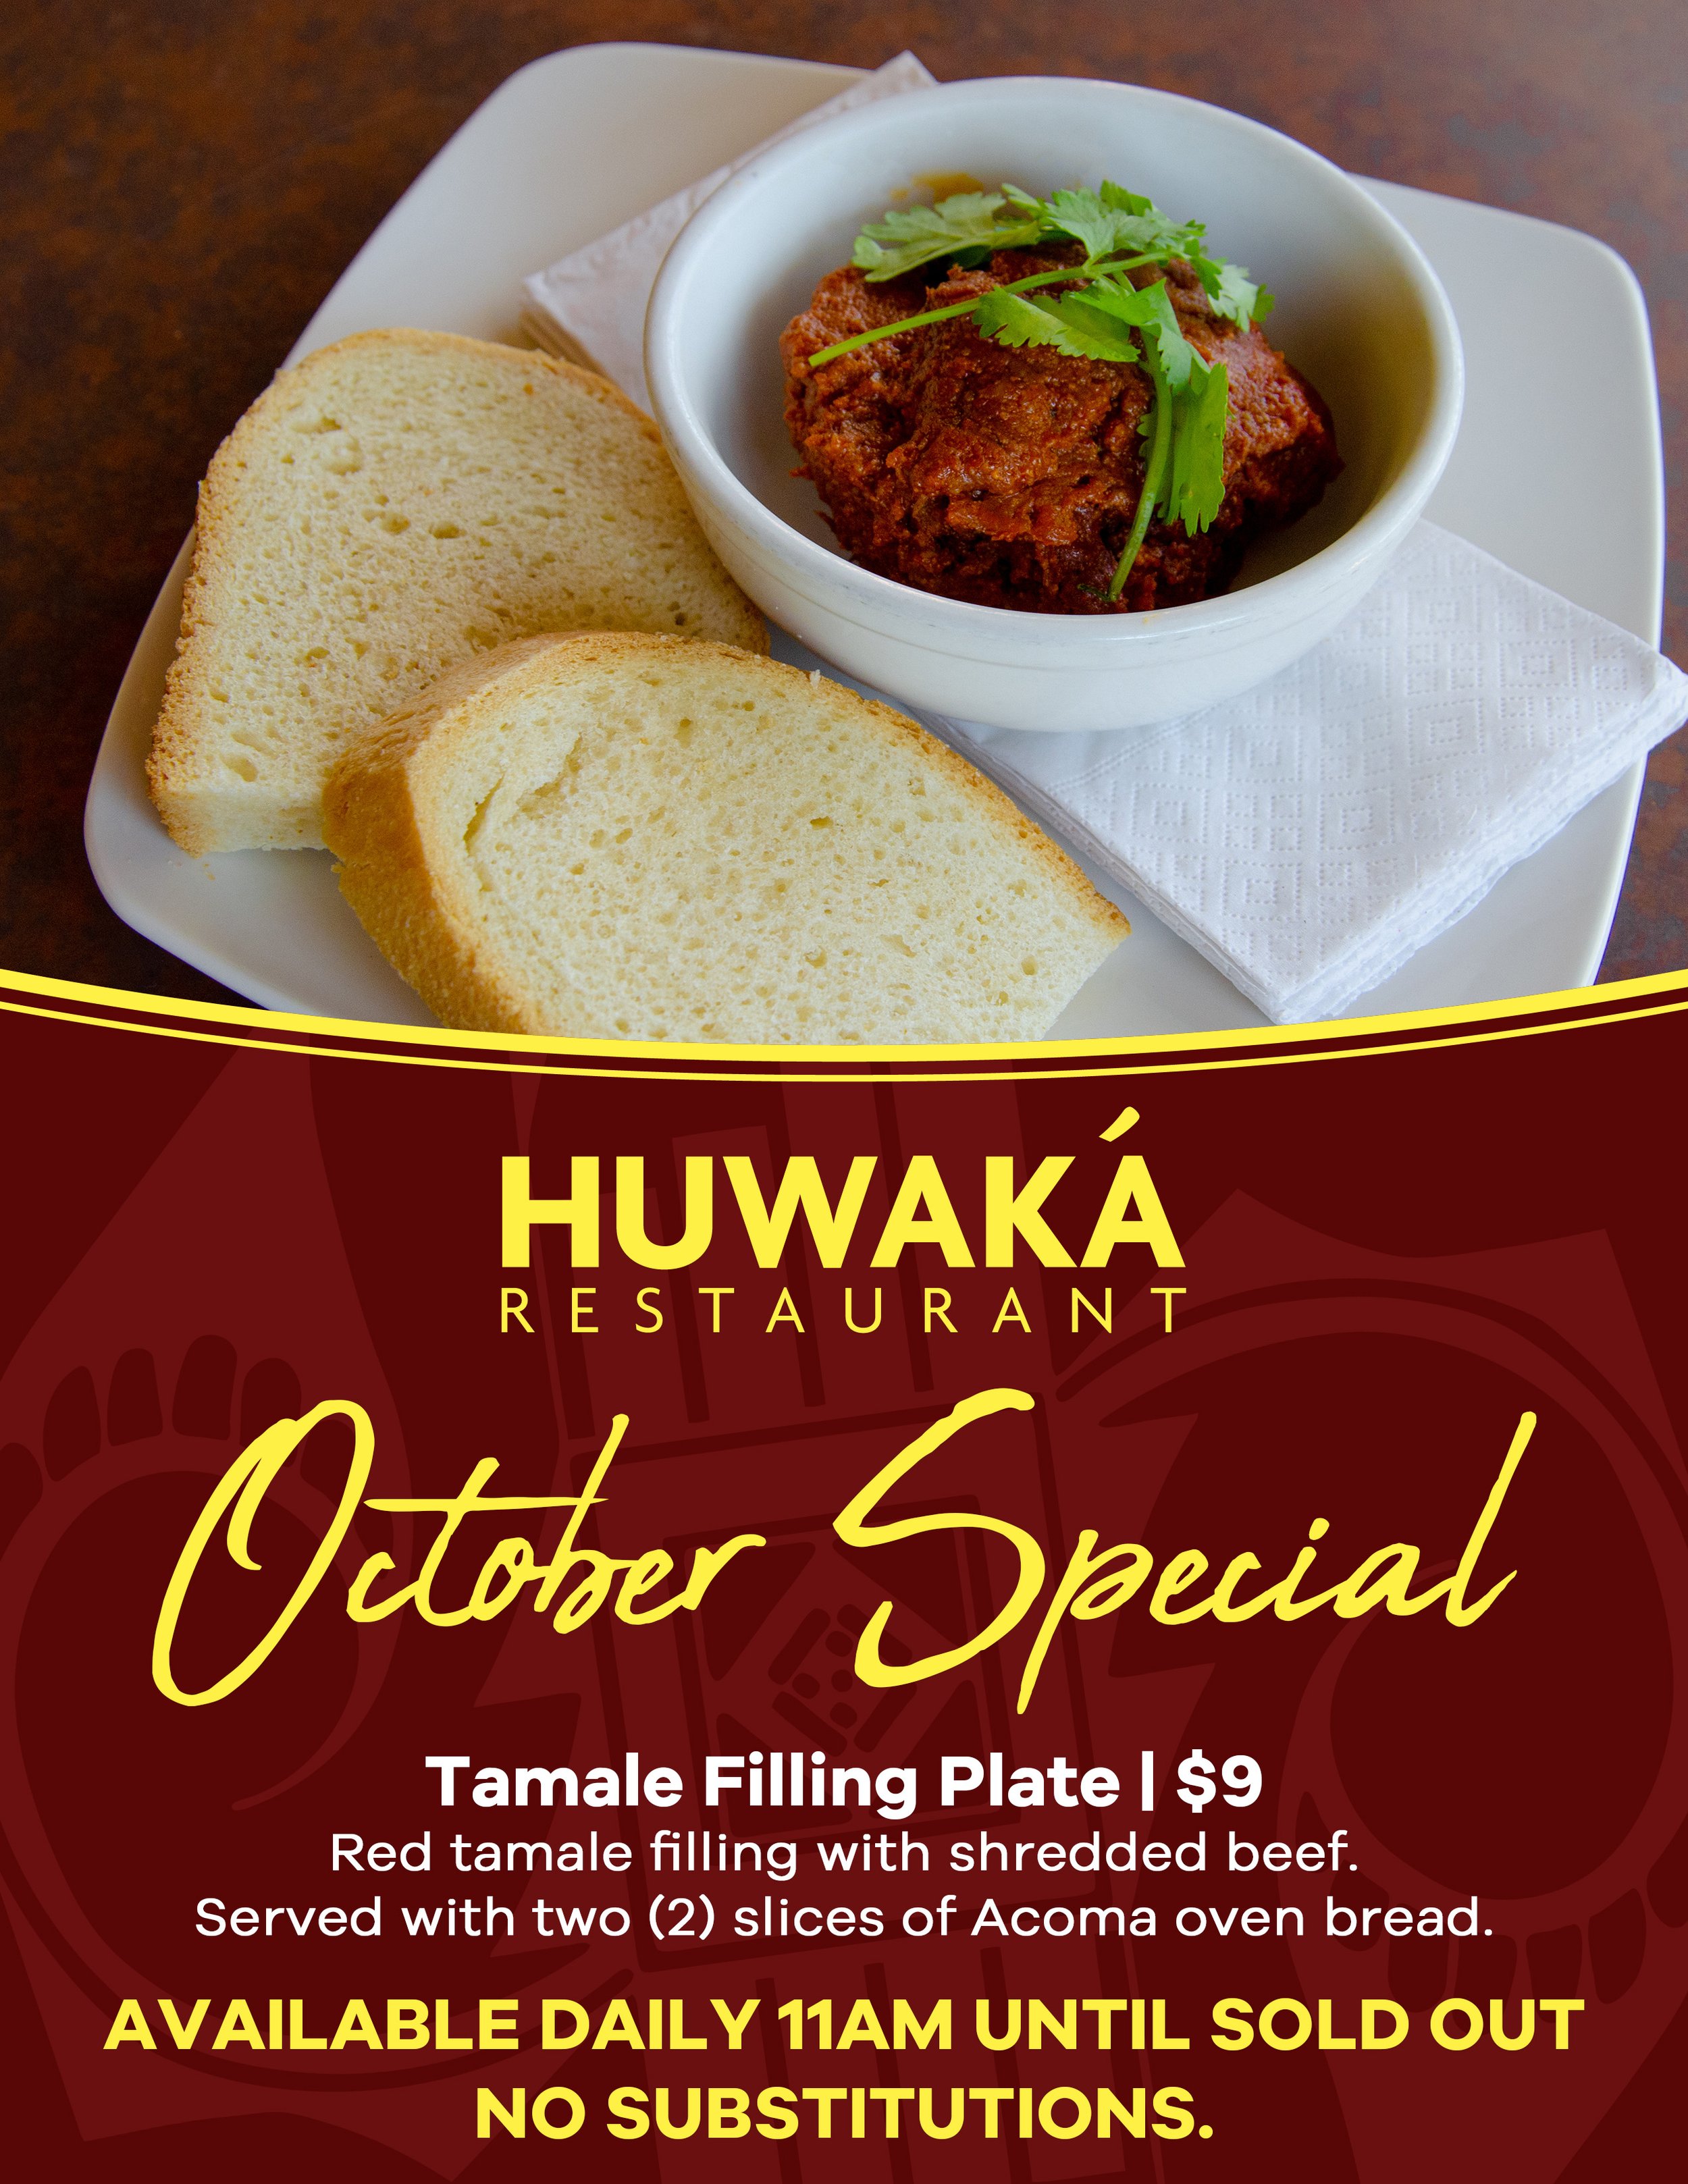 Huwaka Oct23 Special.jpg